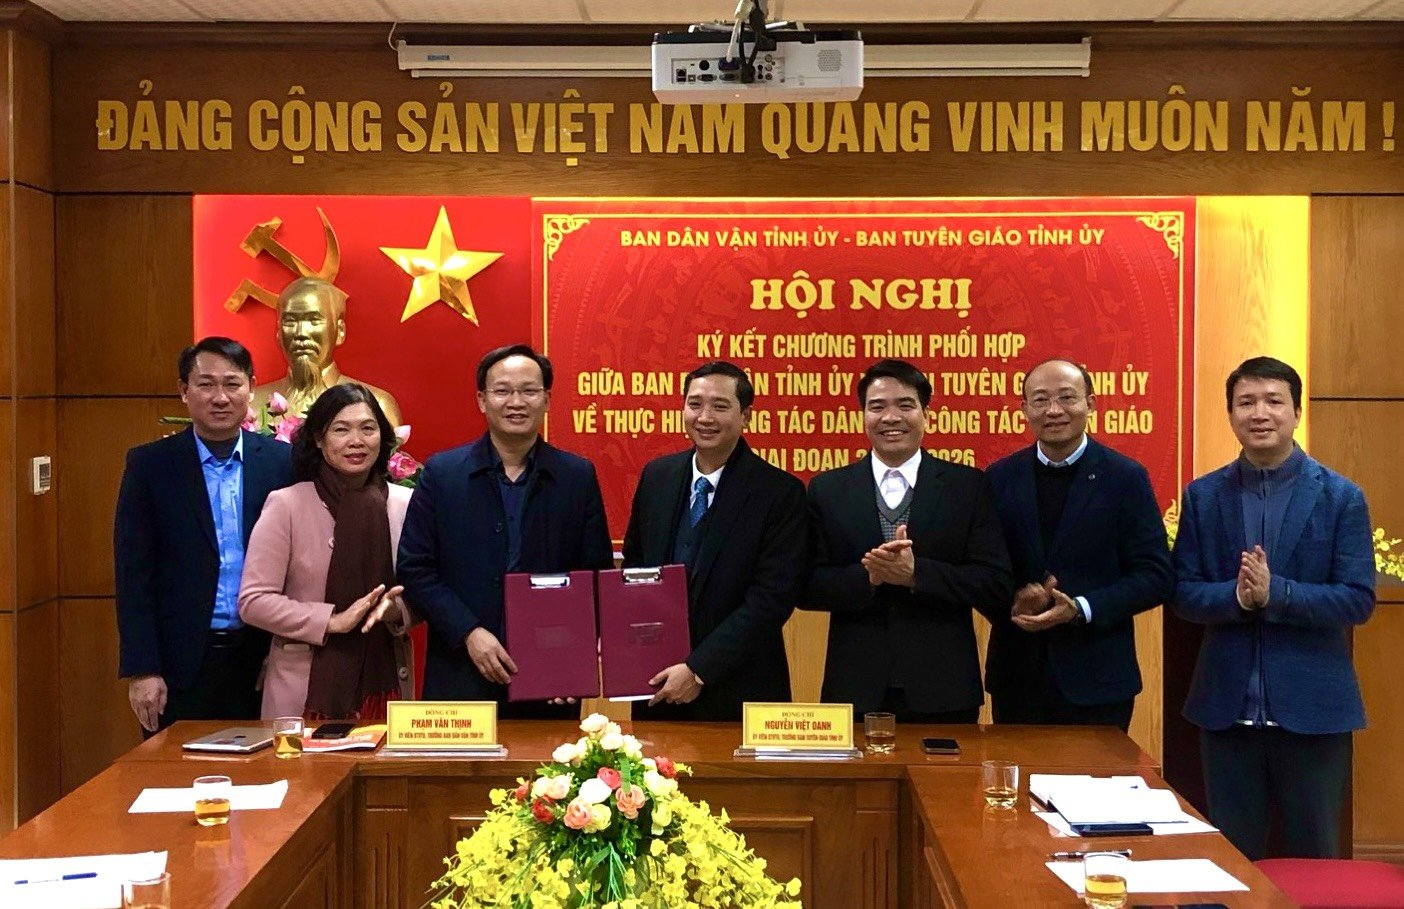 Đổi mới, nâng cao chất lượng, hiệu quả công tác dân vận và tuyên giáo tỉnh Bắc Giang